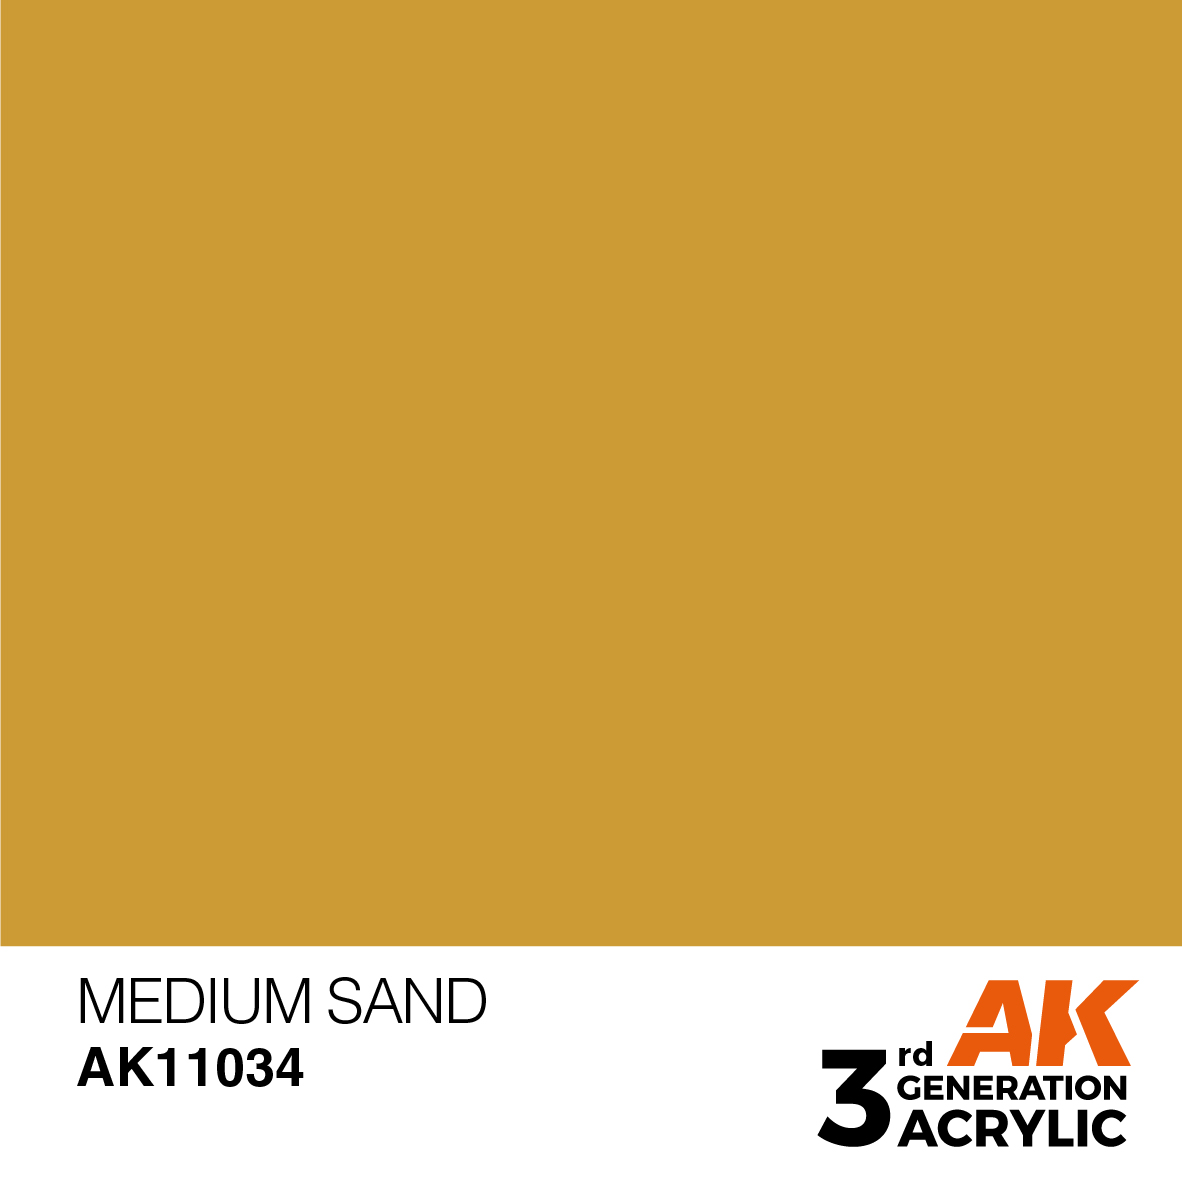 Medium Sand - Standard